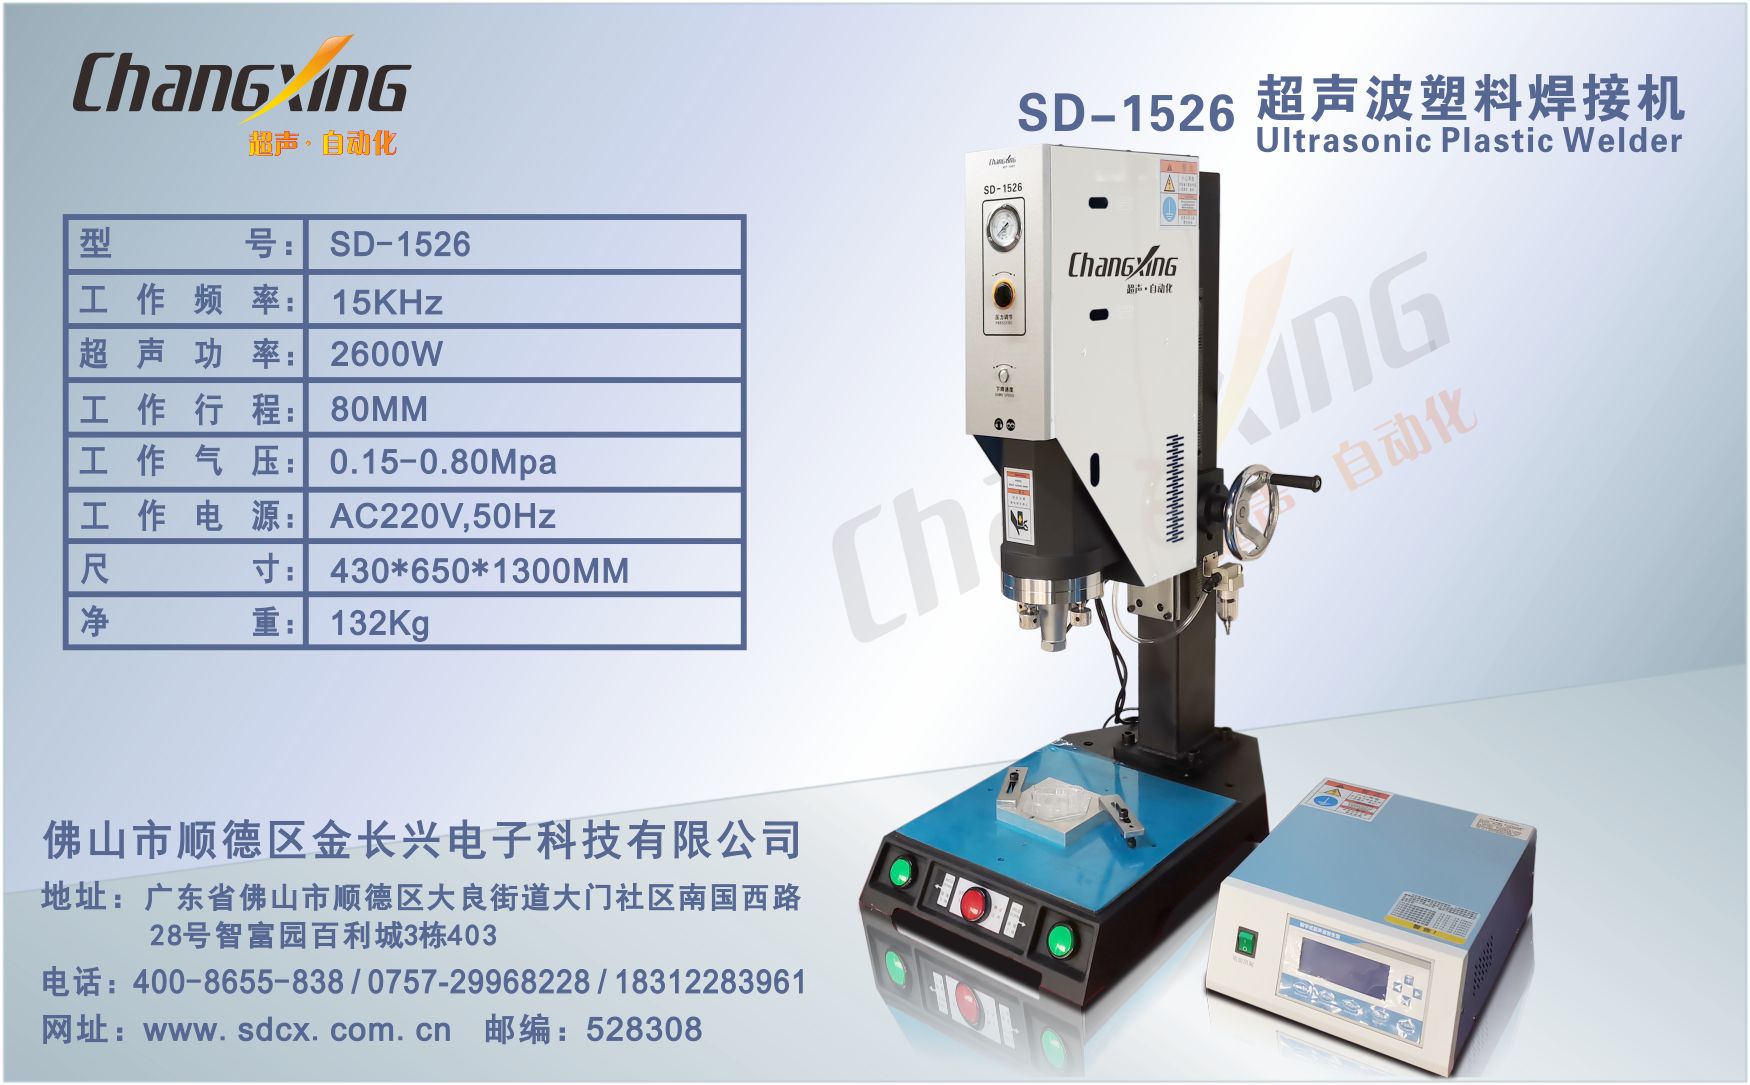 SD-1526超声波塑料焊接机(新地址)